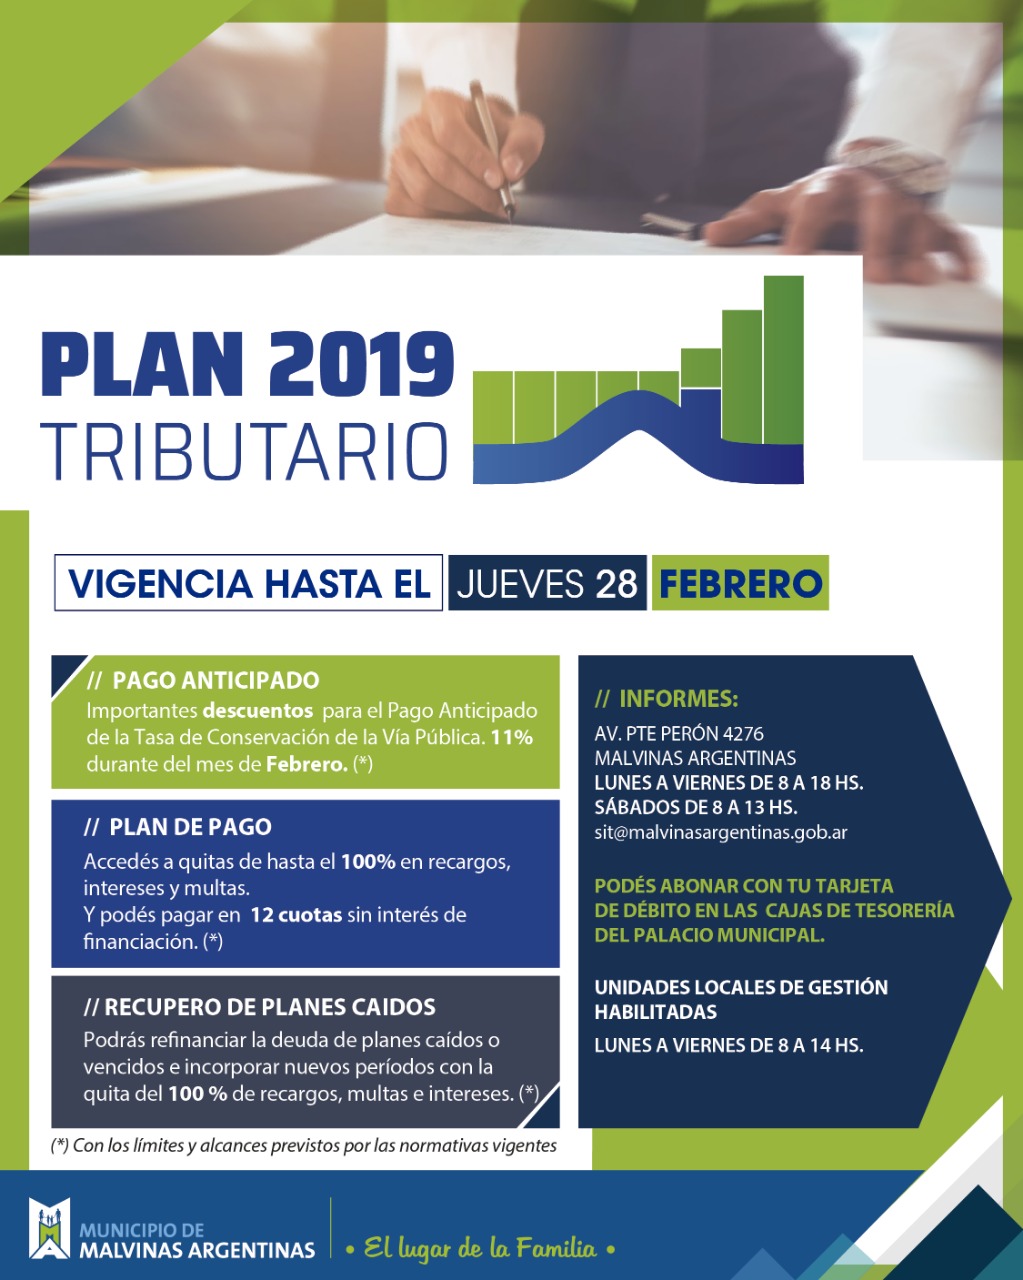  Plan Tributario 2019: se extiende un mes